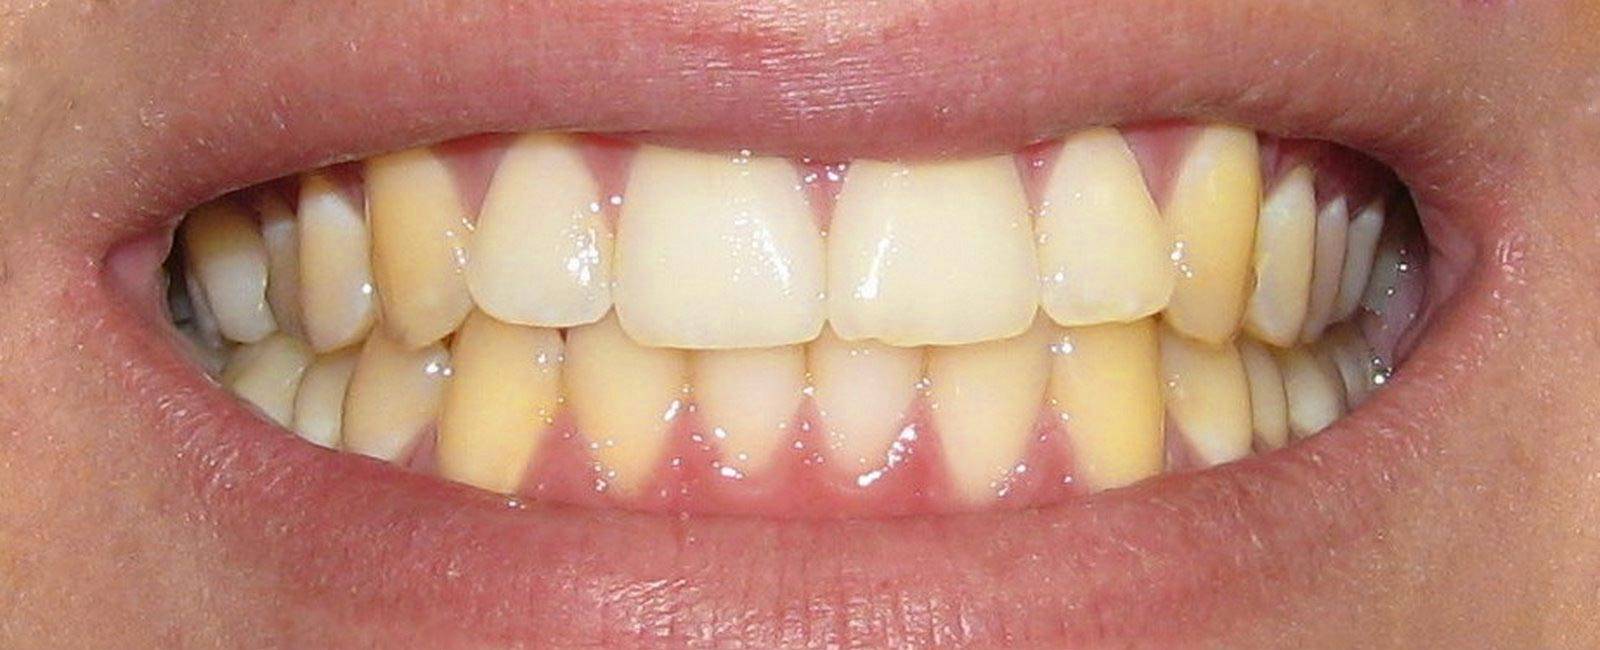 Как удалить пятна от чая с зубов - советы стоматологов.